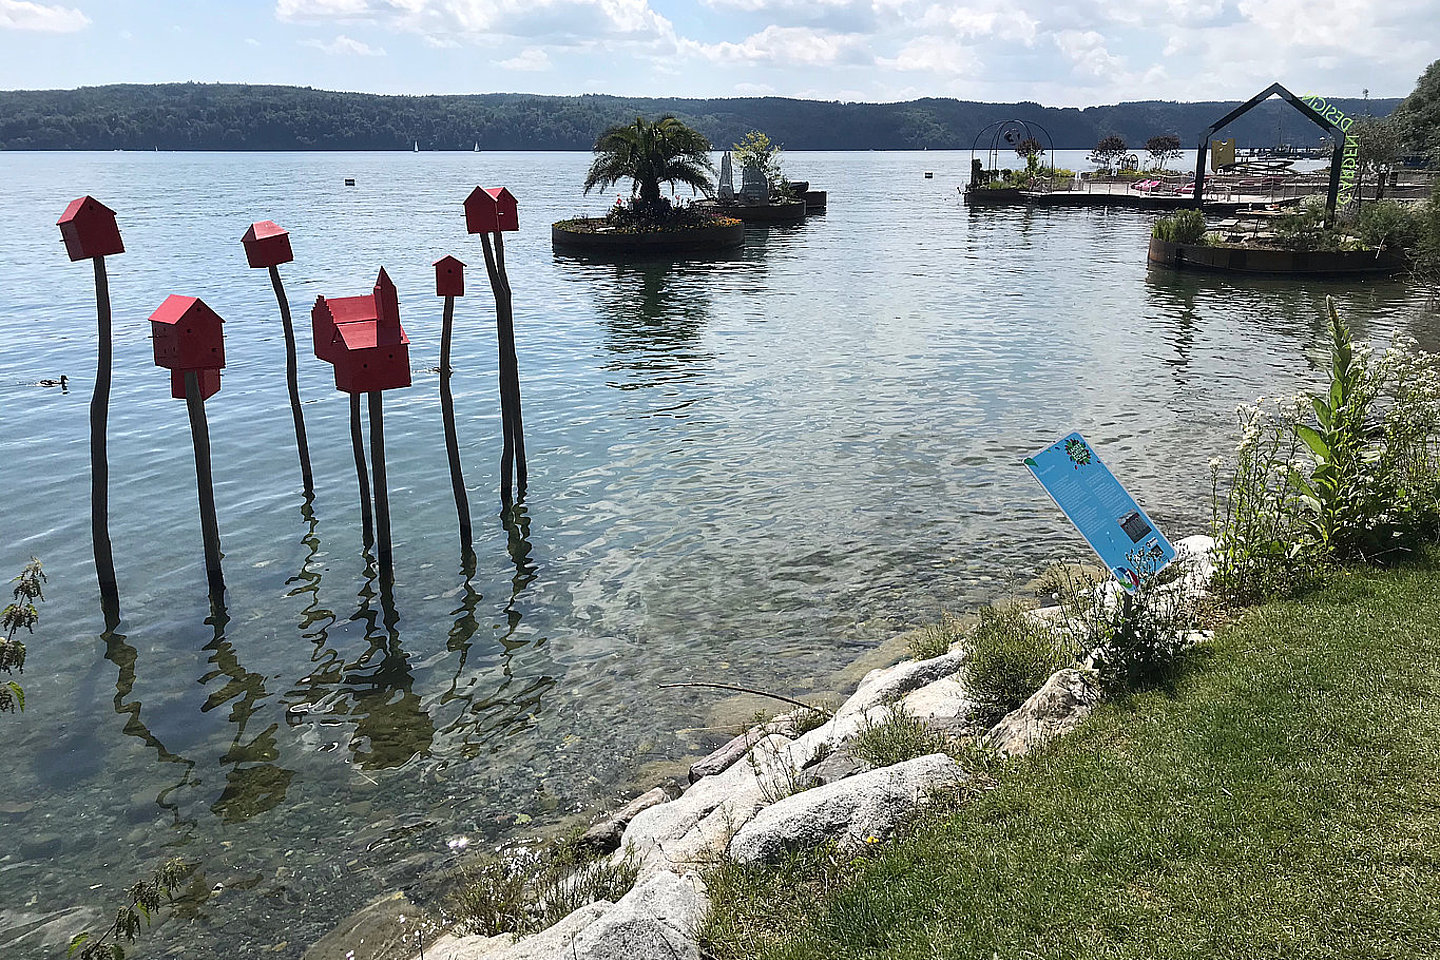 Ein Bild vom Bodensee mit schwimmenden Gärten und im Wasser auf Stelen stehenden Vogelhäusern